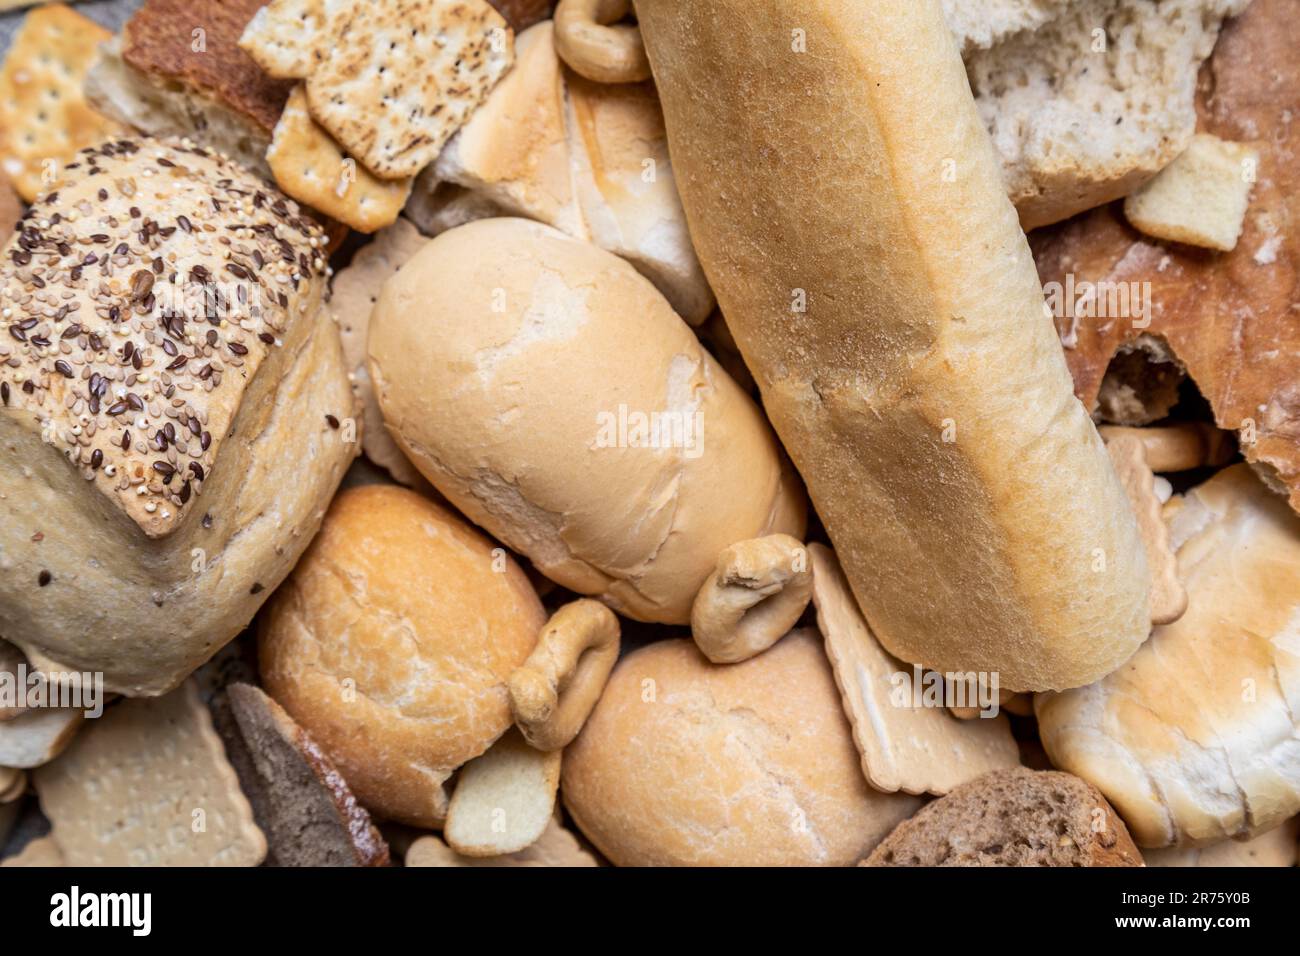 Italia, grande quantità di pane raffermo in diversi formati, scarti alimentari, cibo non consumato Foto Stock